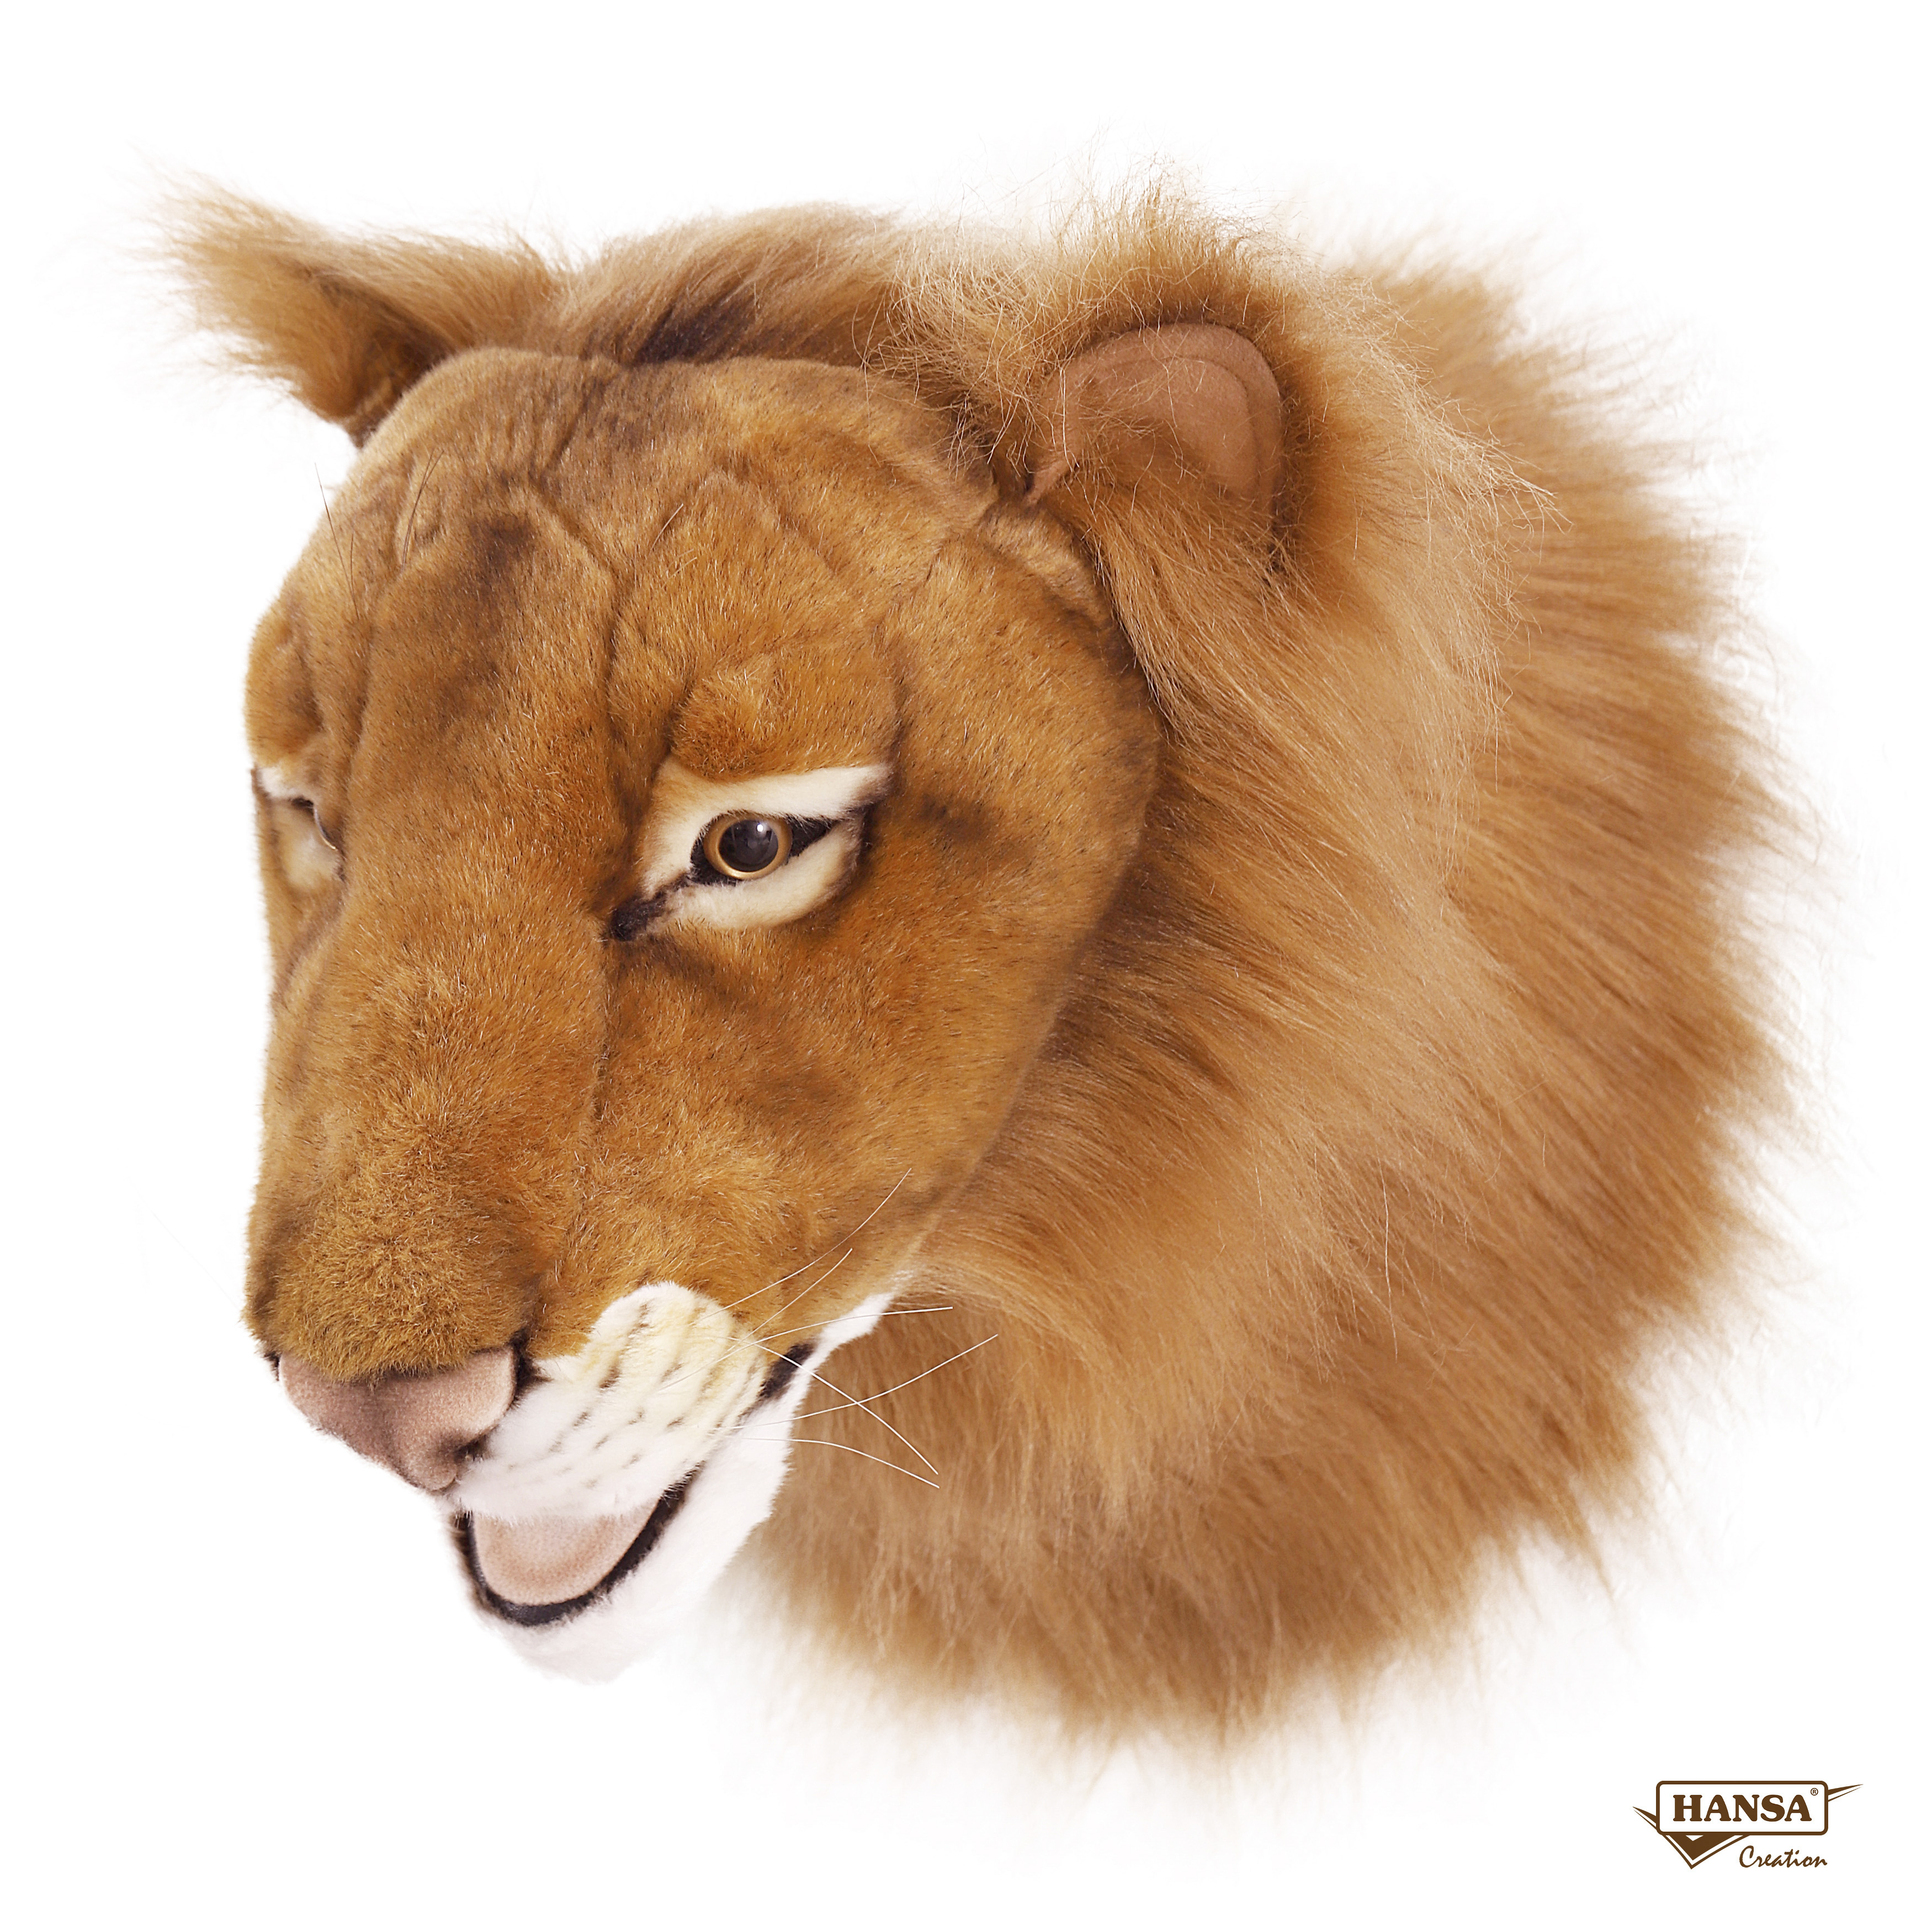 Реалистичная мягкая игрушка Hansa Creation Голова льва, 39 см мягкая игрушка hansa львенок 18 см